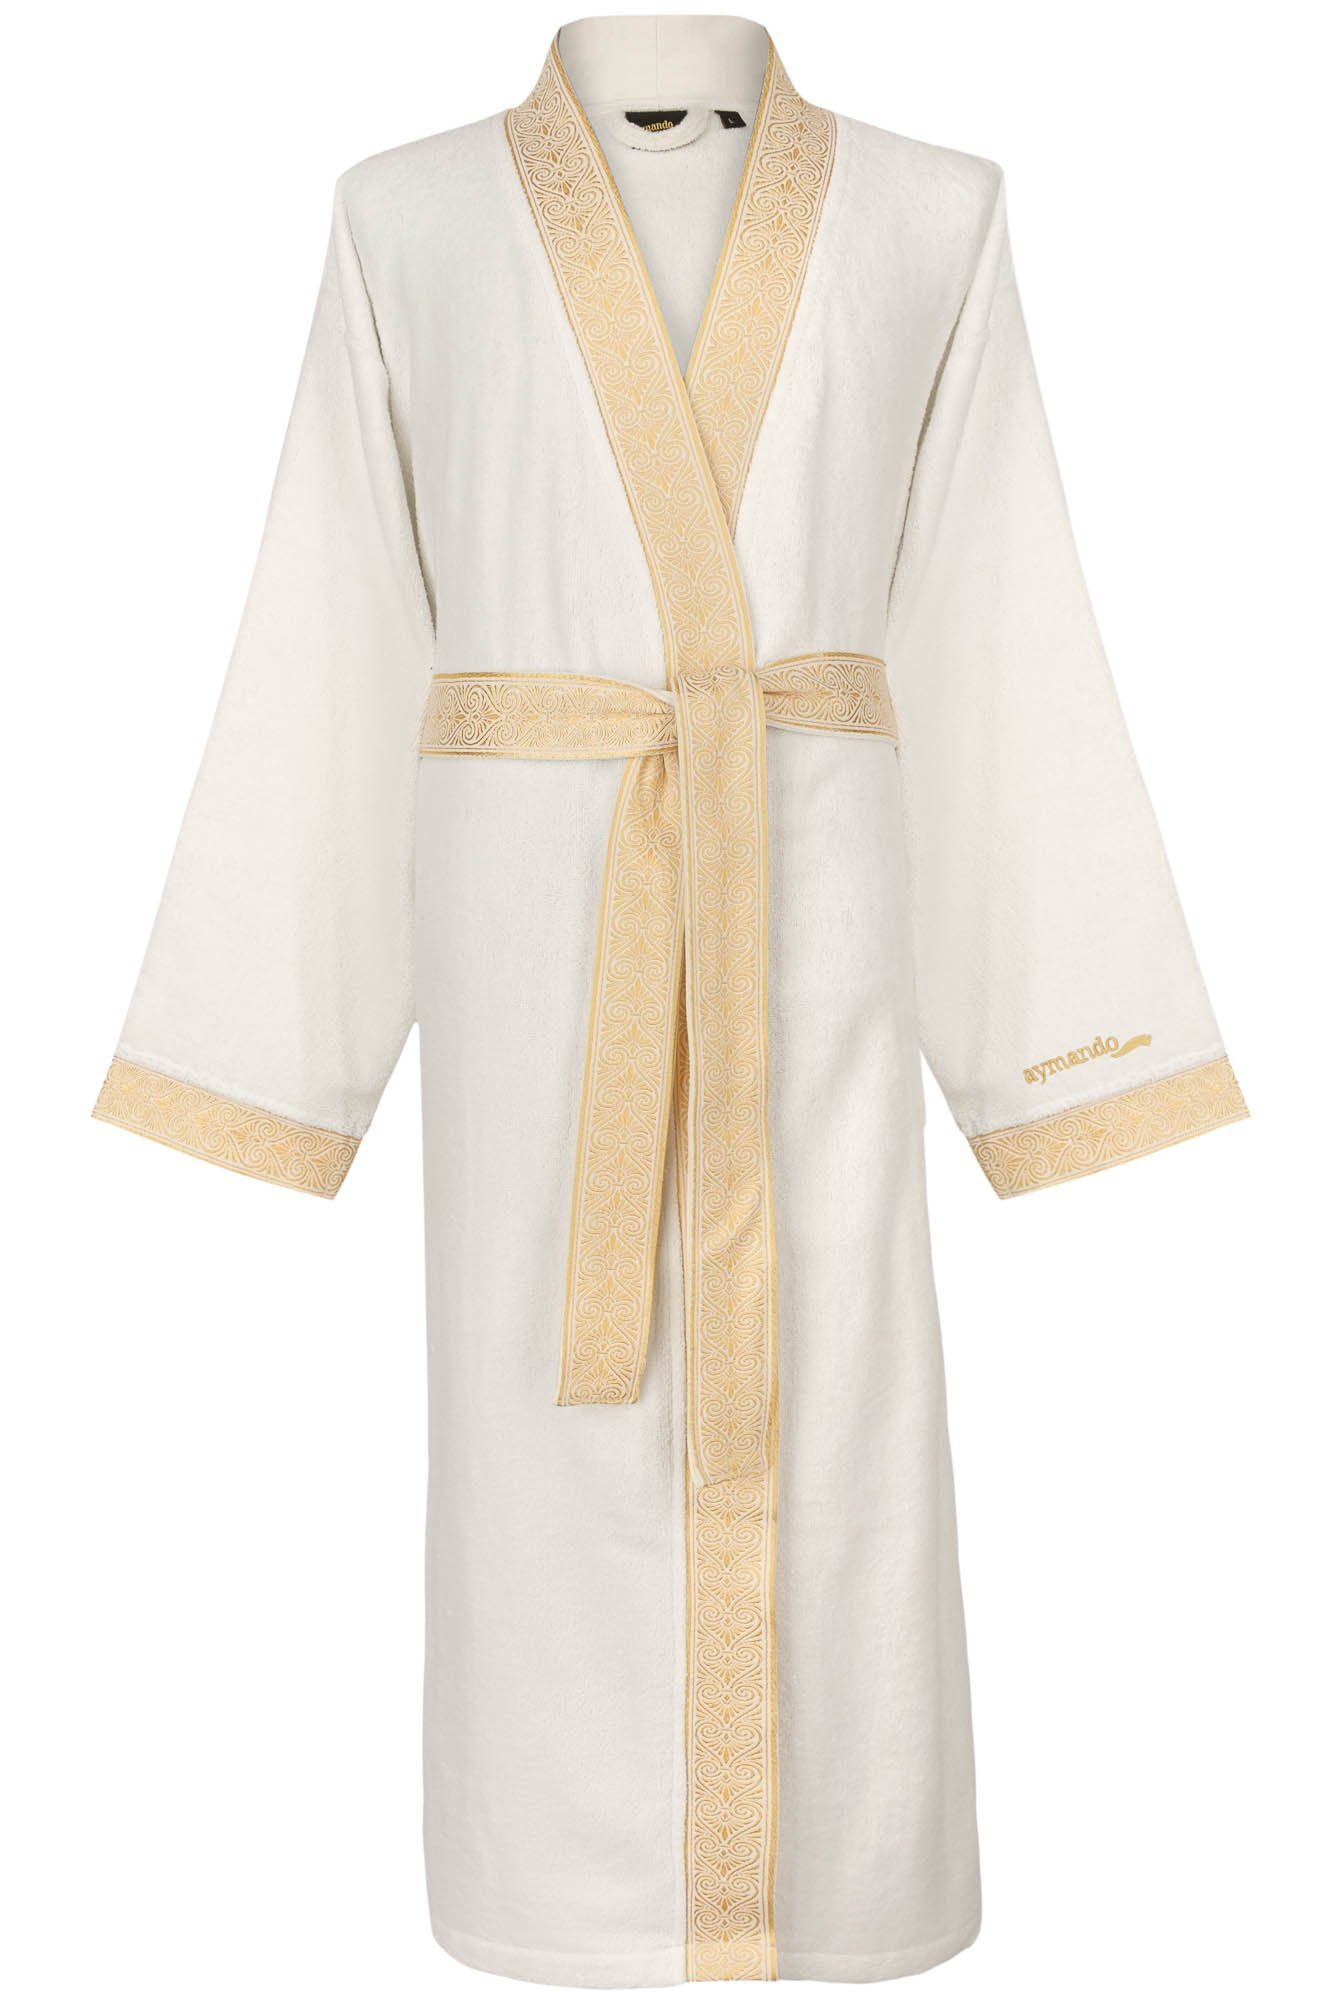 Aymando Bademantel Weiß, S, 100% Baumwolle, Kimono-Kragen, Bindegürtel, Gold gestickte Blende mit Ornament Optik, Geschenkverpackung | Damen Bademäntel